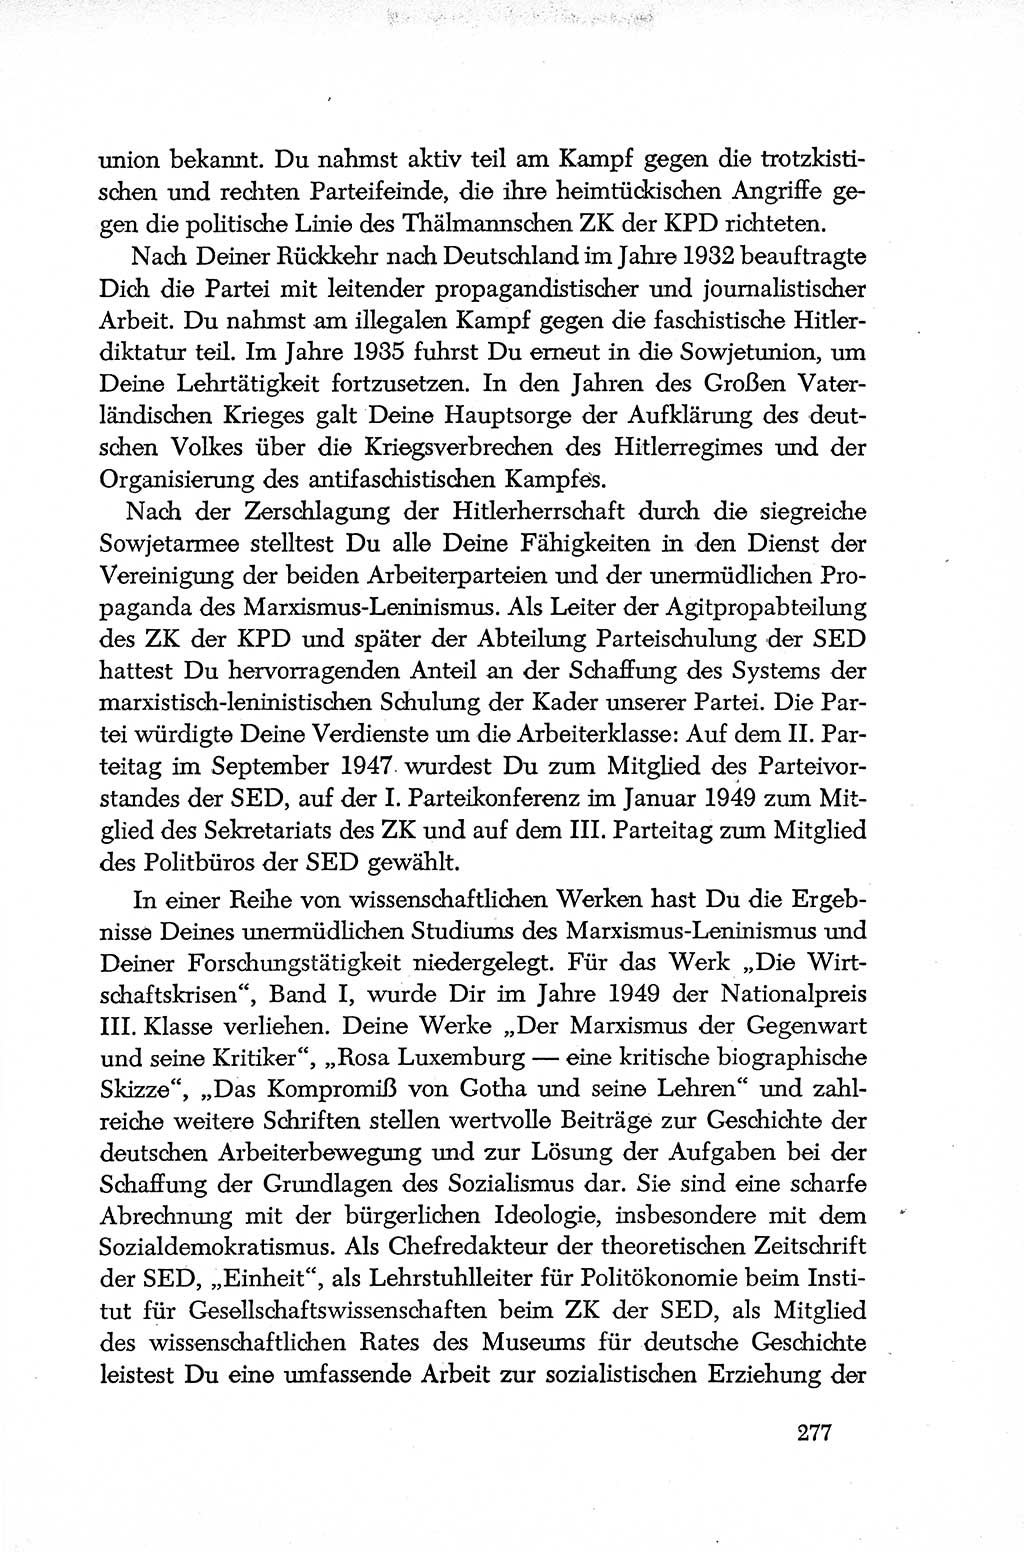 Dokumente der Sozialistischen Einheitspartei Deutschlands (SED) [Deutsche Demokratische Republik (DDR)] 1952-1953, Seite 277 (Dok. SED DDR 1952-1953, S. 277)